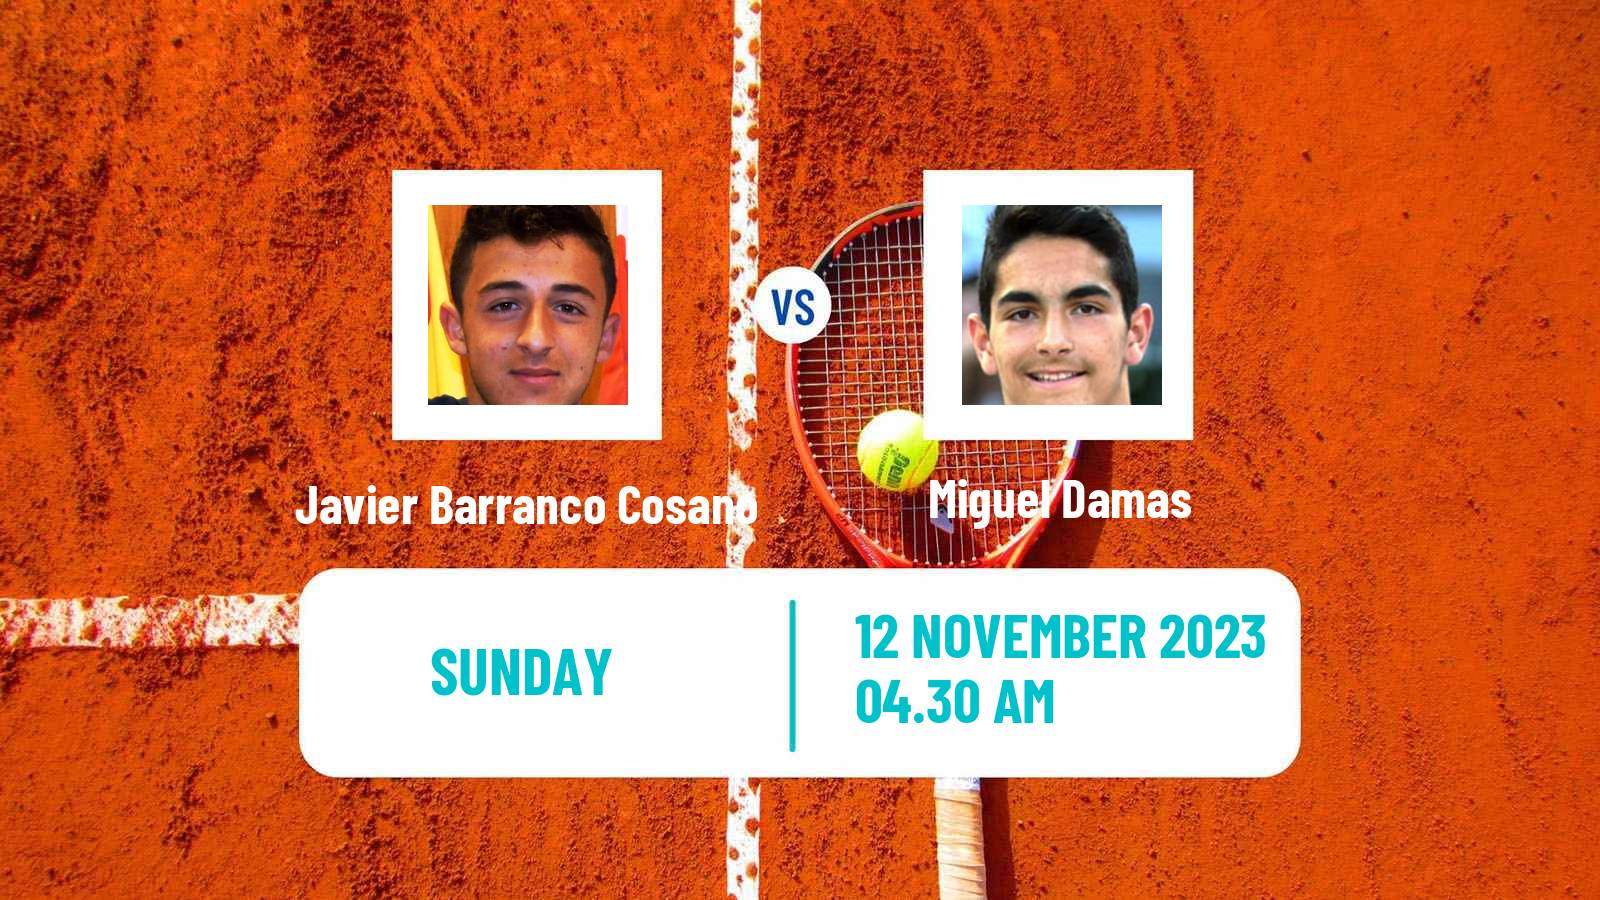 Tennis ITF M25 Benicarlo Men Javier Barranco Cosano - Miguel Damas